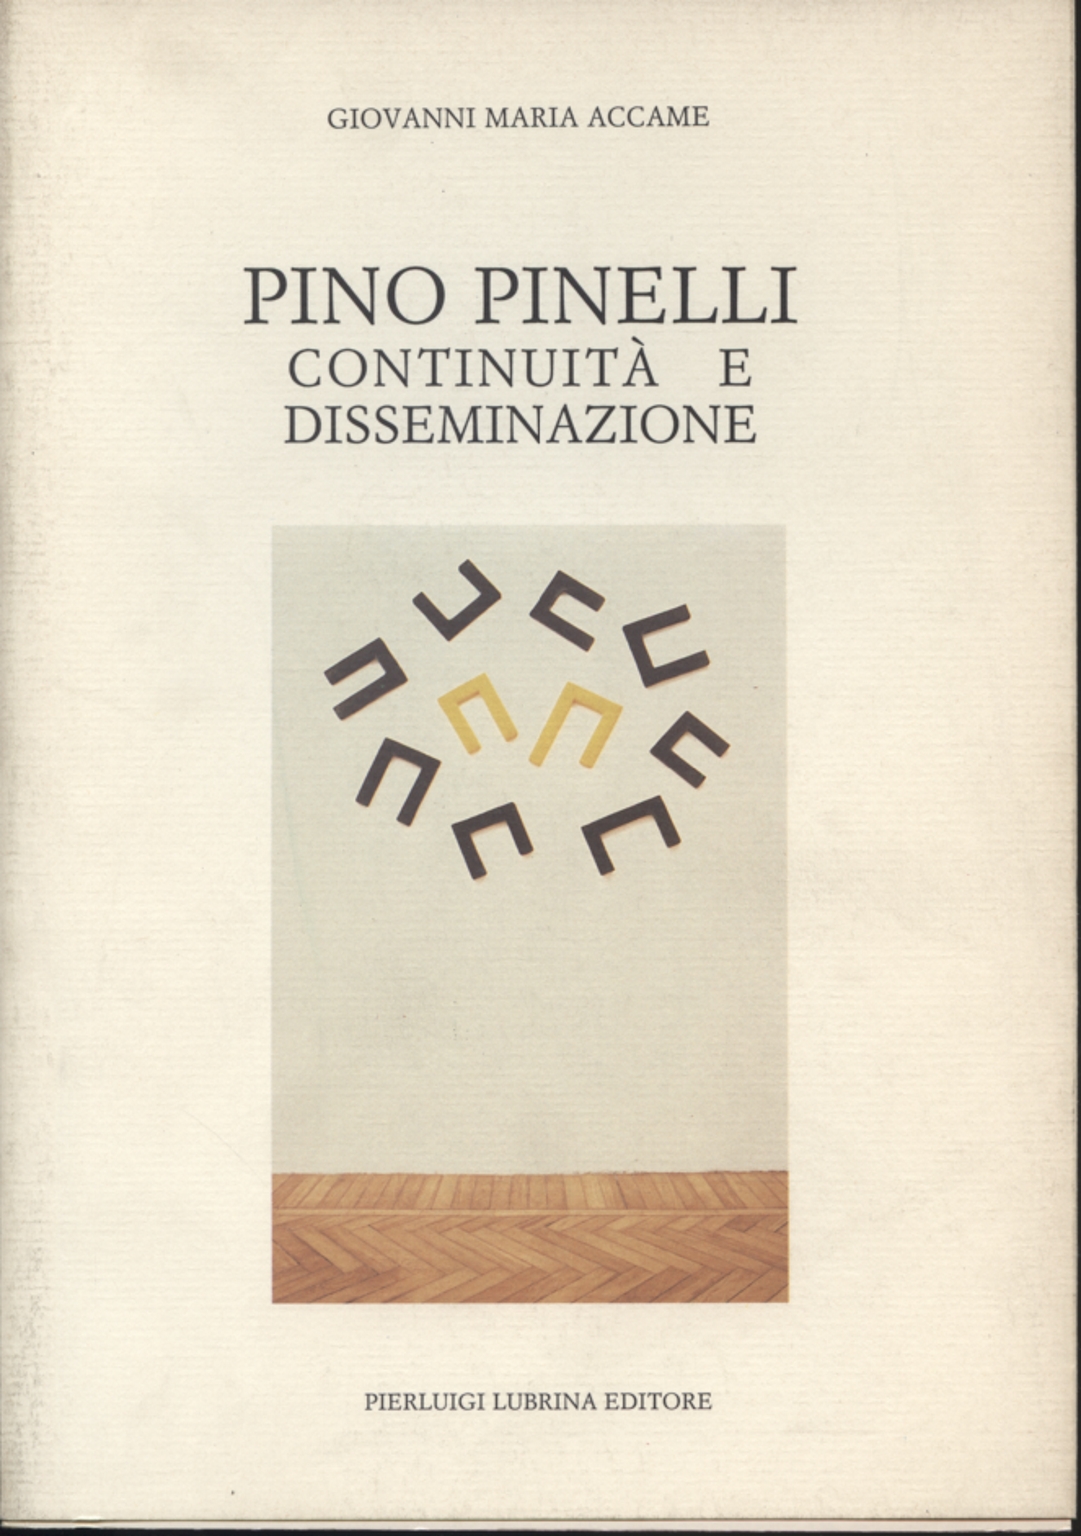 Pino Pinelli: continuità e disseminazione, Giovanni Maria Accame